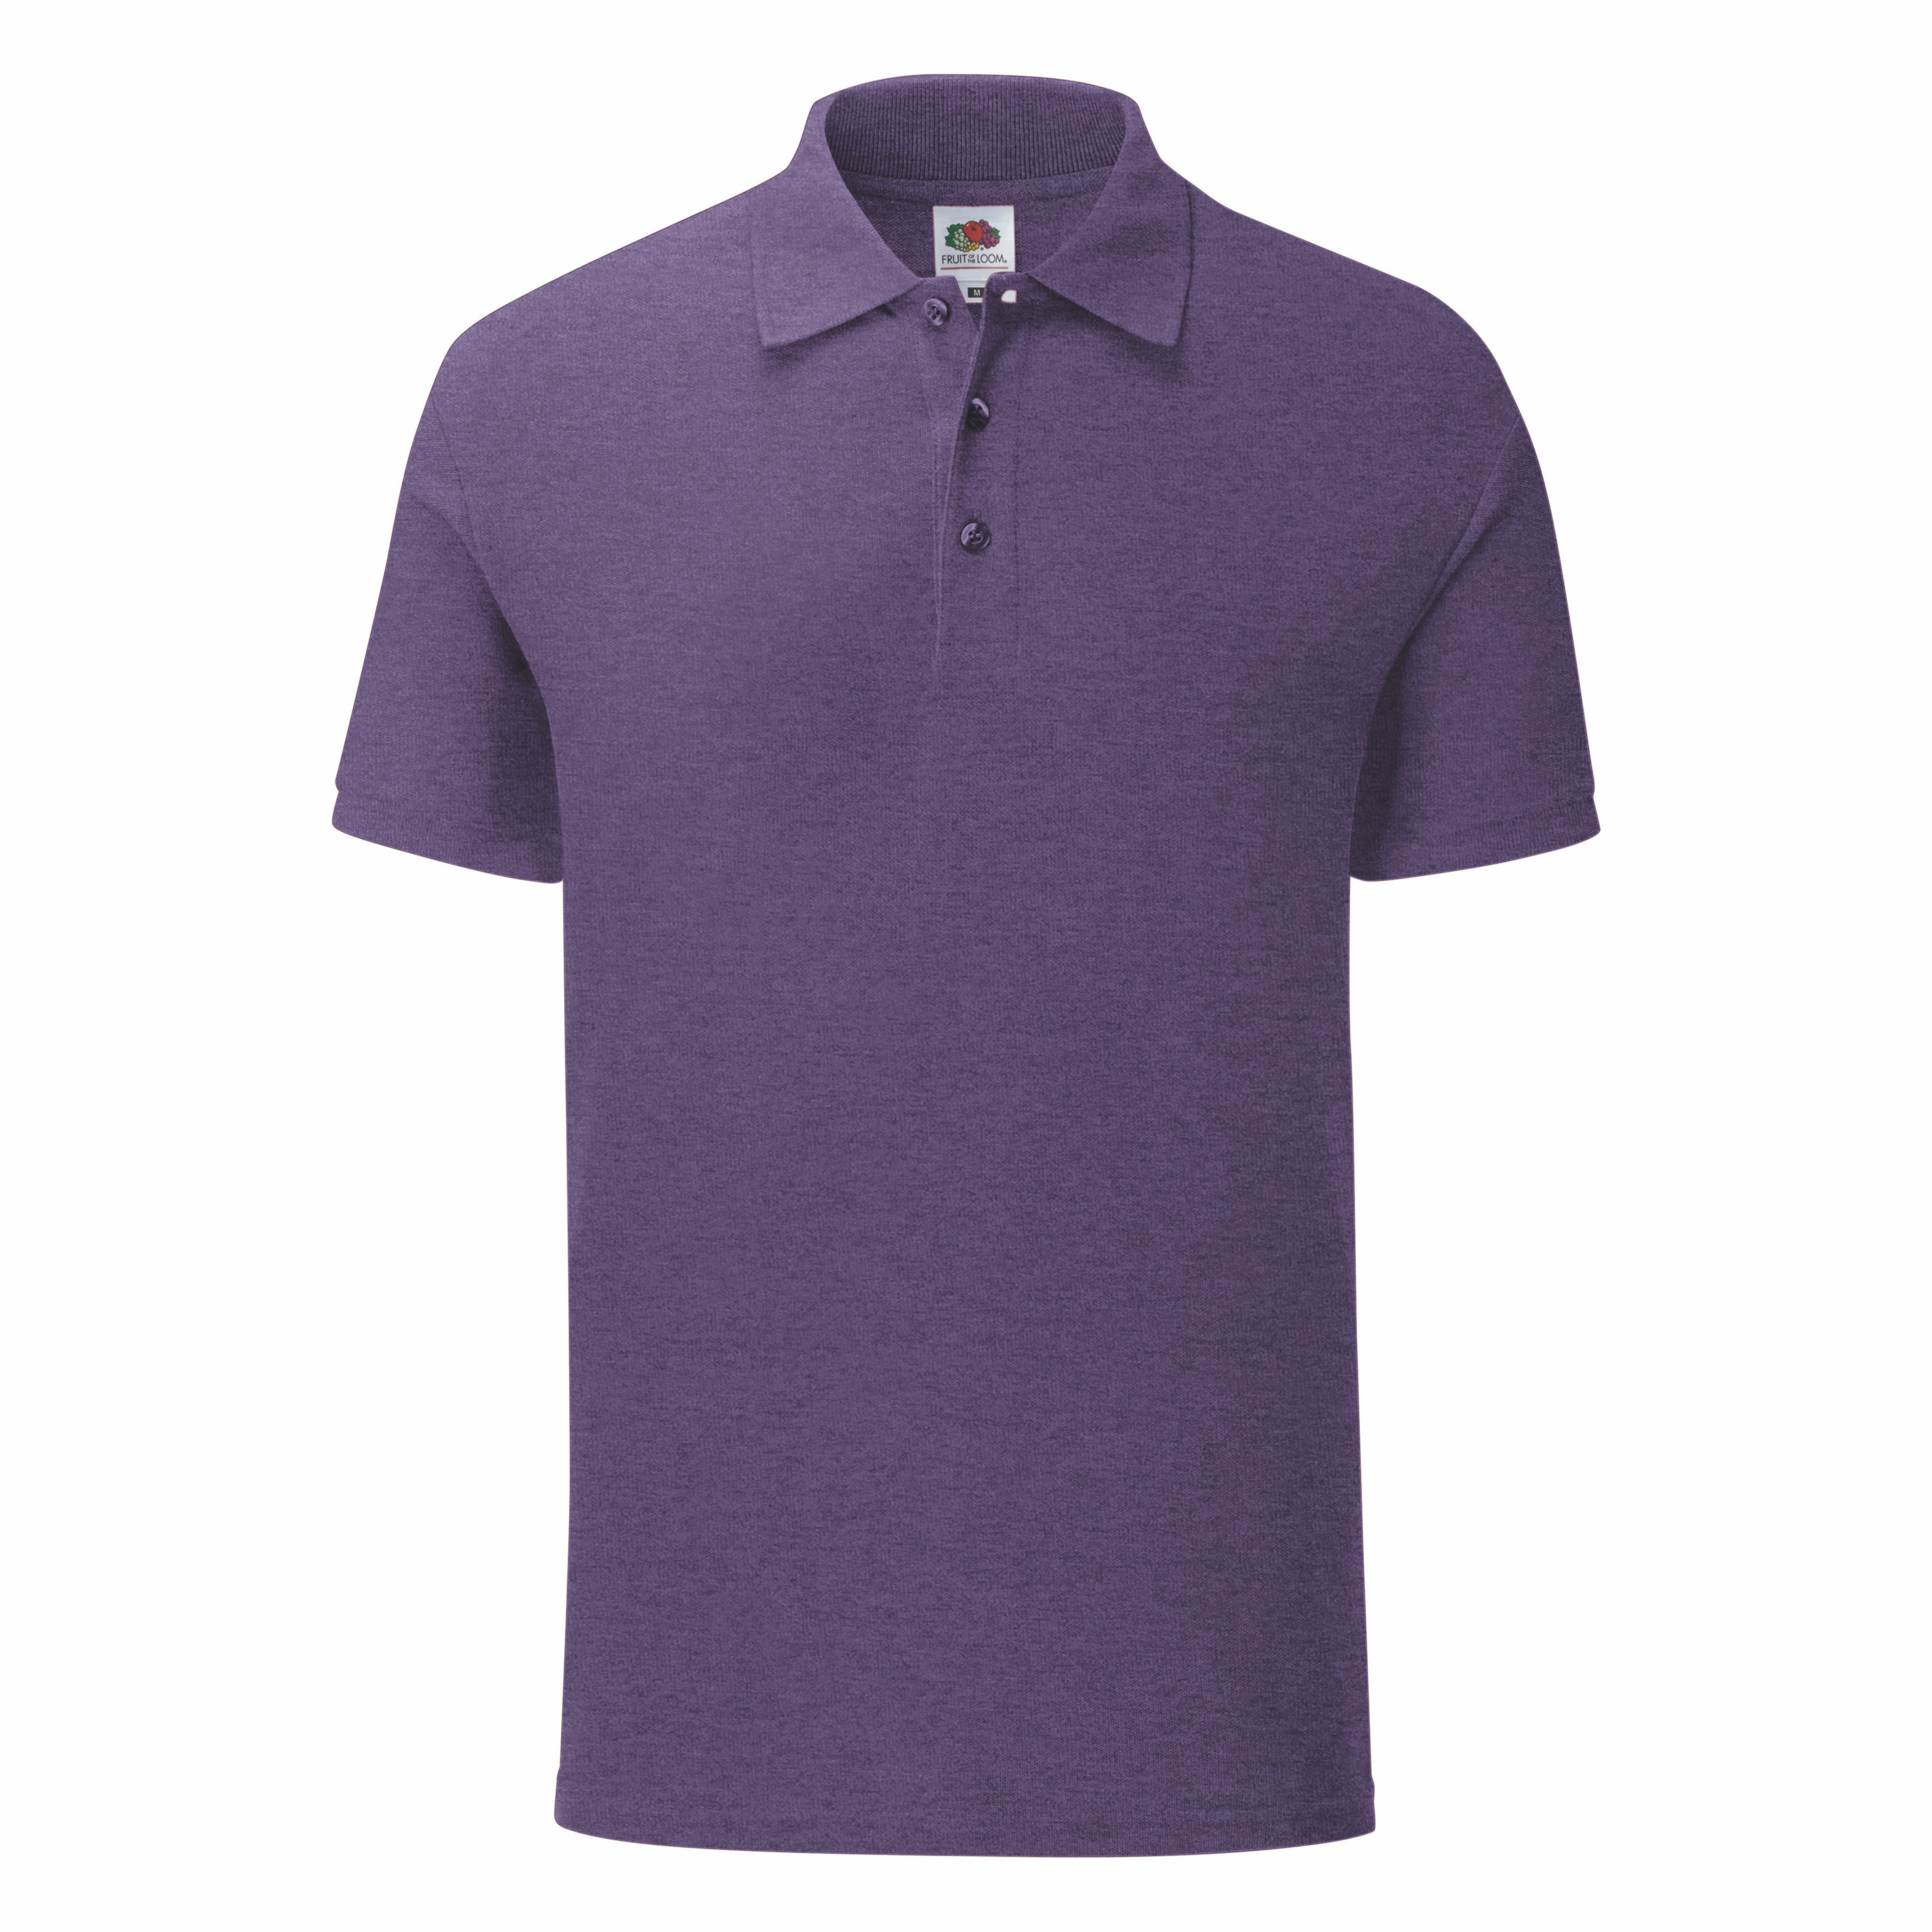 Koszulka męska Iconic Polo z odrywaną metką Fruit of the Loom Heather Purple